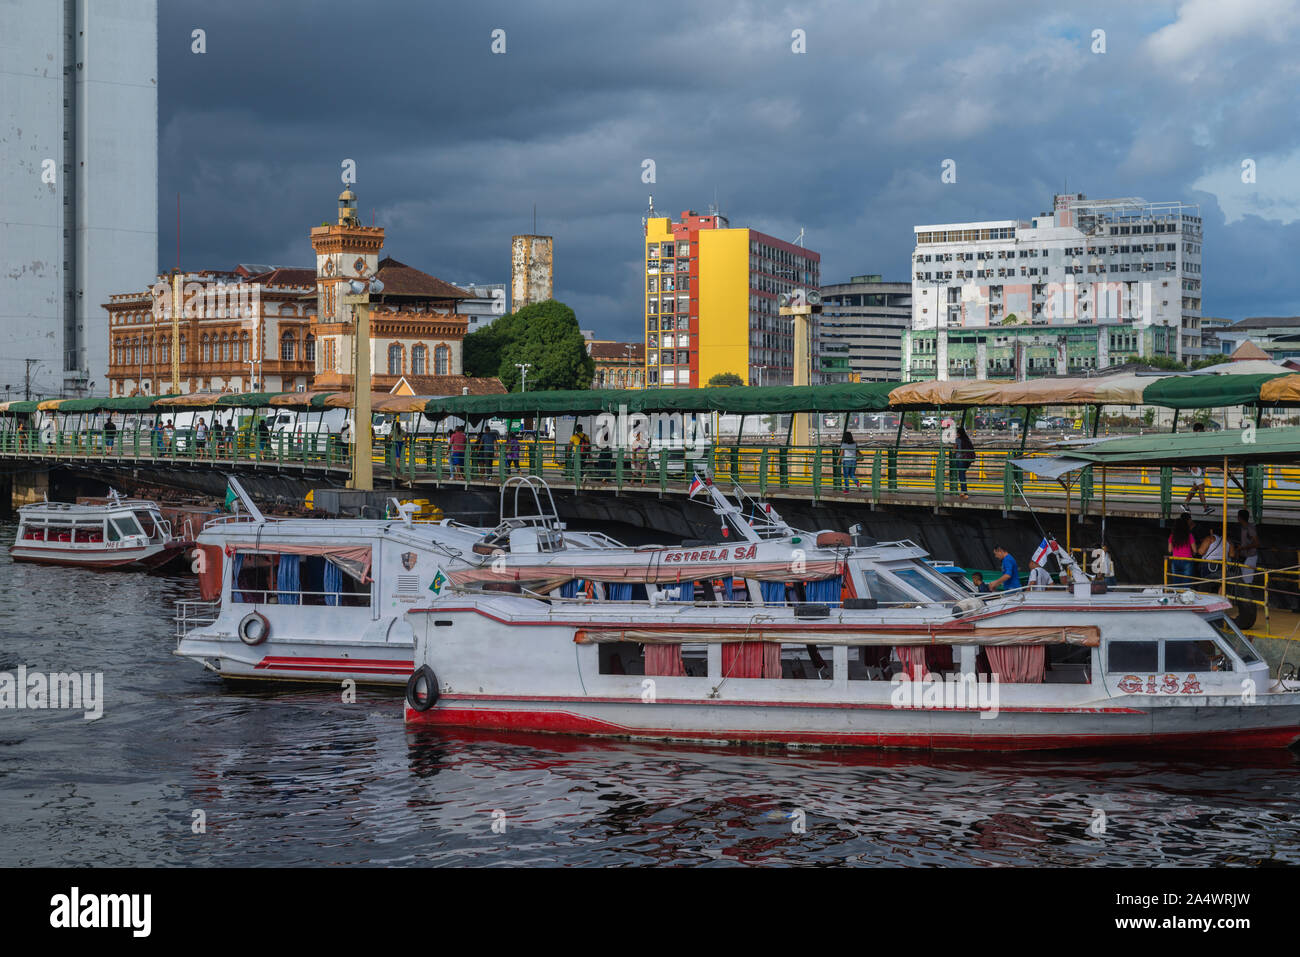 Le port flottant de Porto Flutante, les bateaux rapides pour les visites de l'Amazone à l'embarcadère, vue sur la ville de Manaus, l'Amazone, le Brésil, l'Amérique latine Banque D'Images